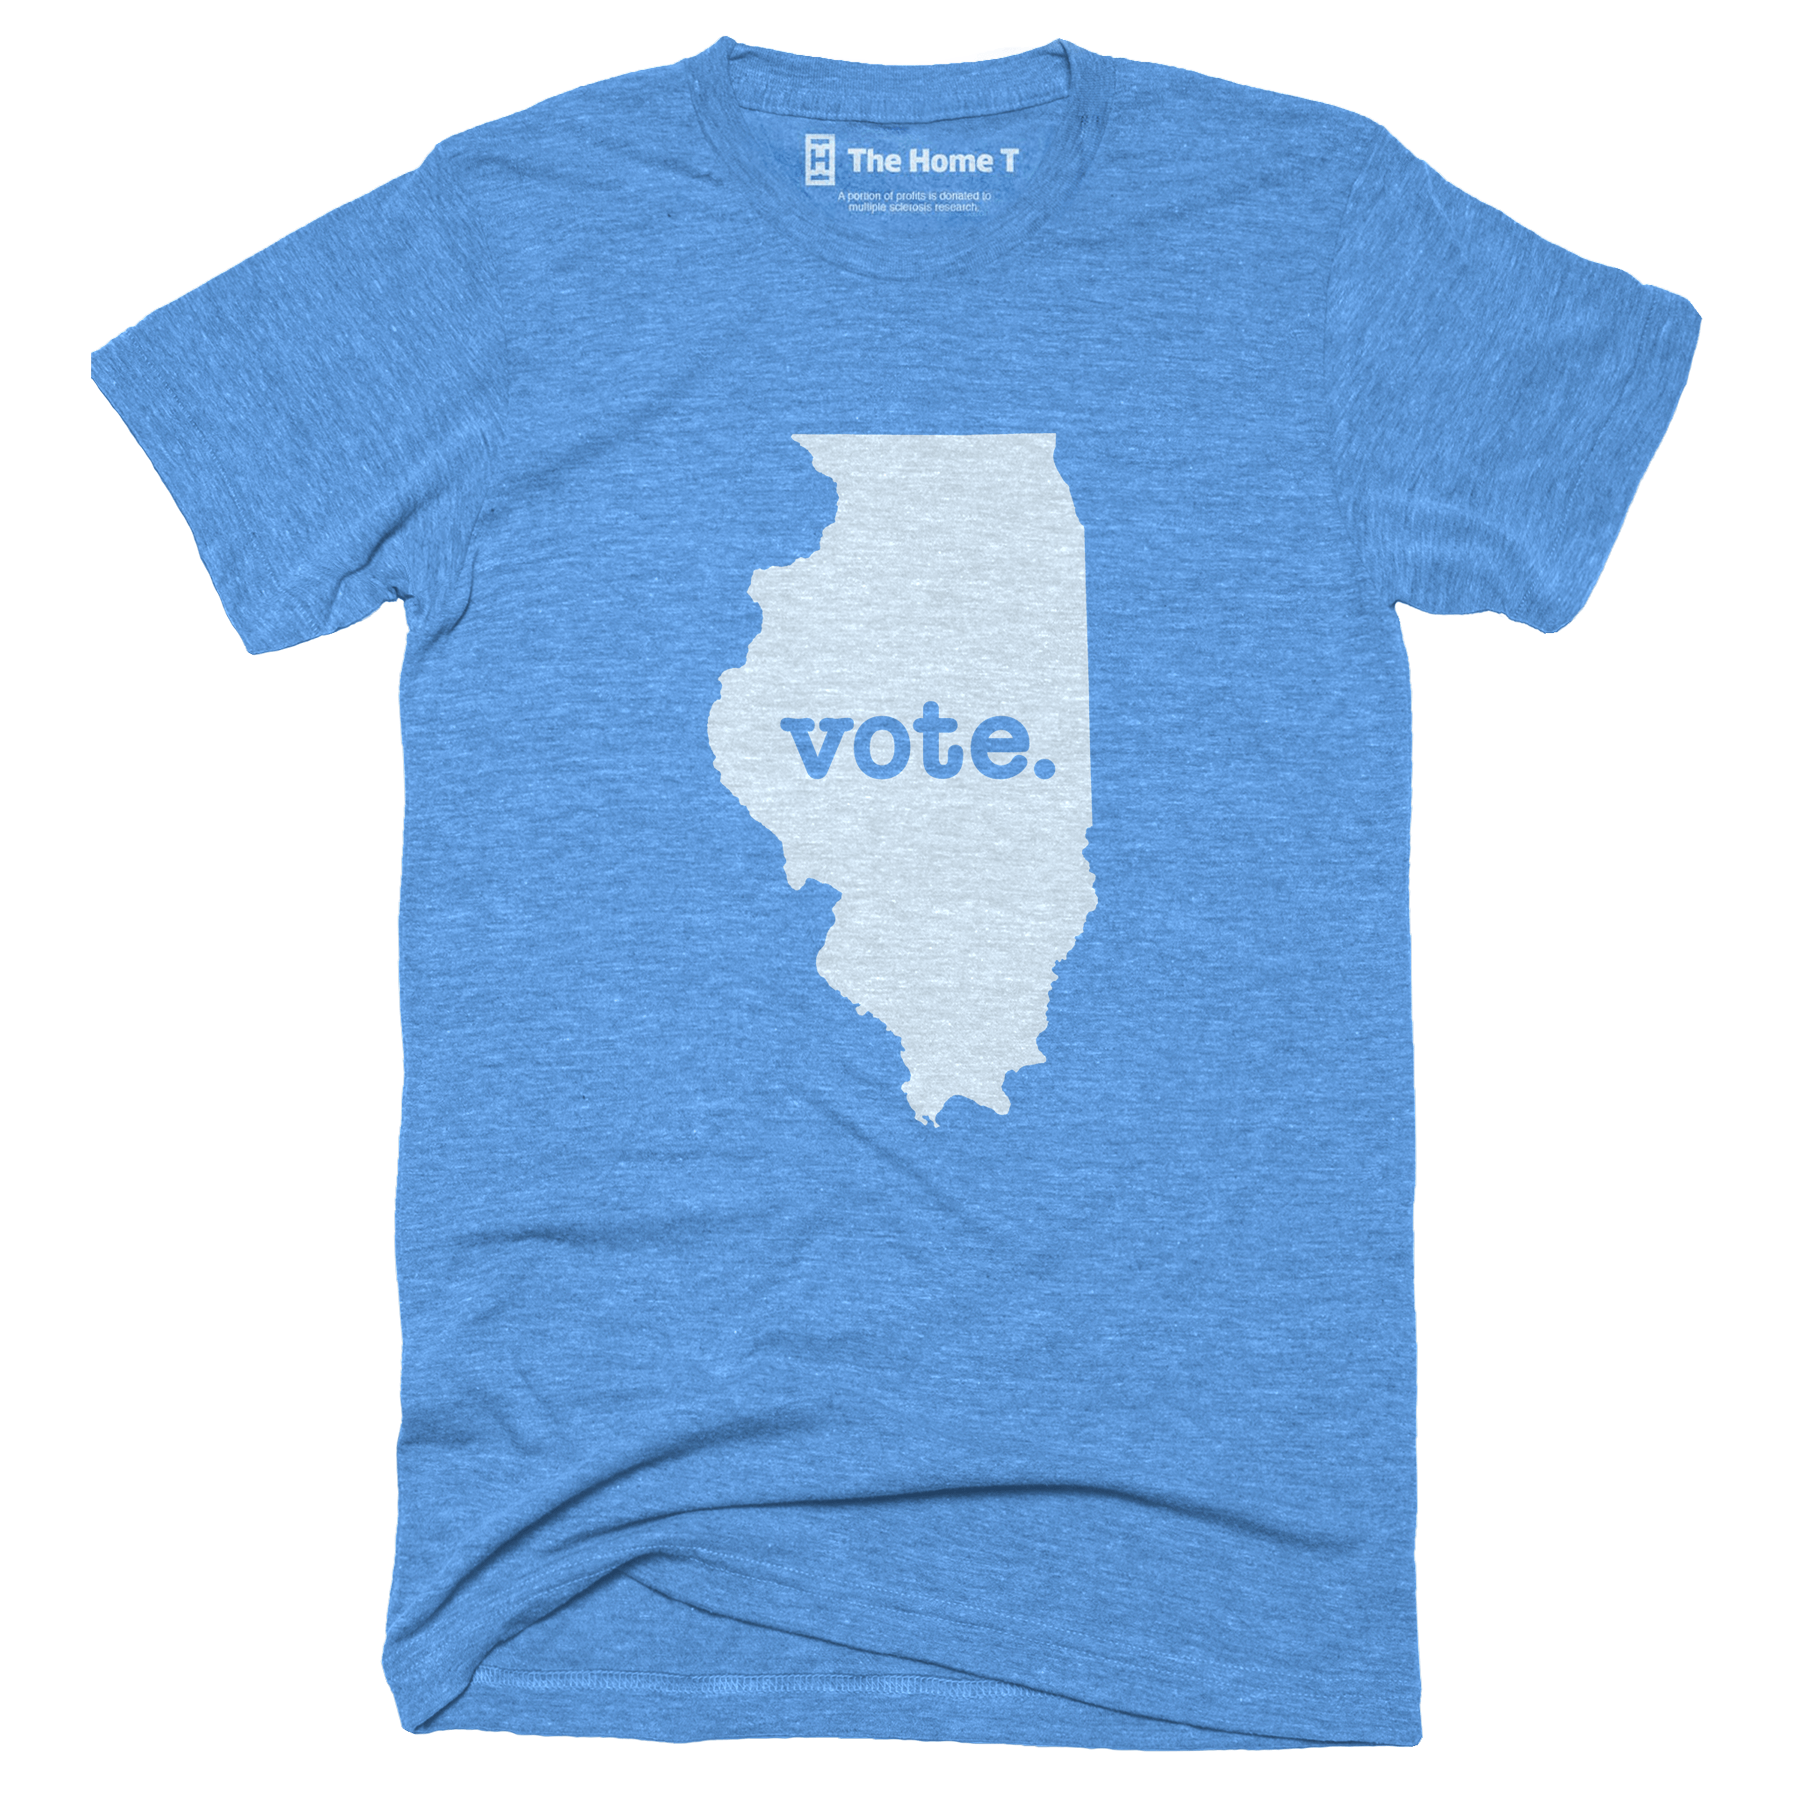 Illinois Vote Home T Vote The Home T XS Blue